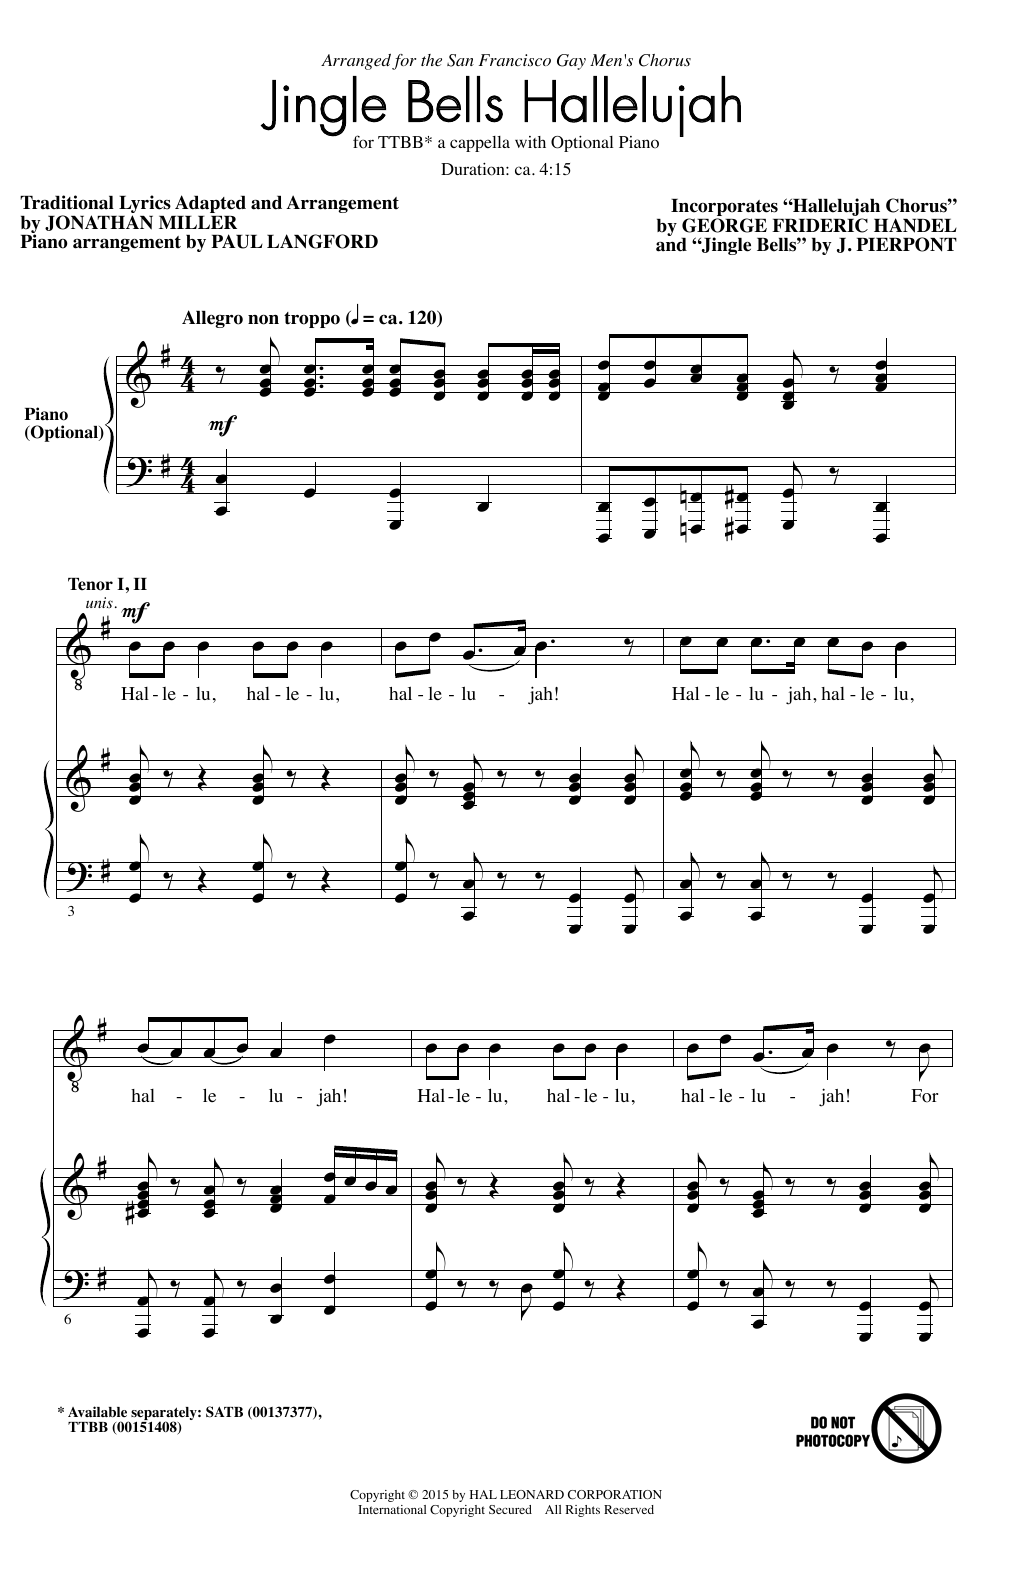 Jonathan Miller Hallelujah Chorus Sheet Music Notes & Chords for TTBB - Download or Print PDF